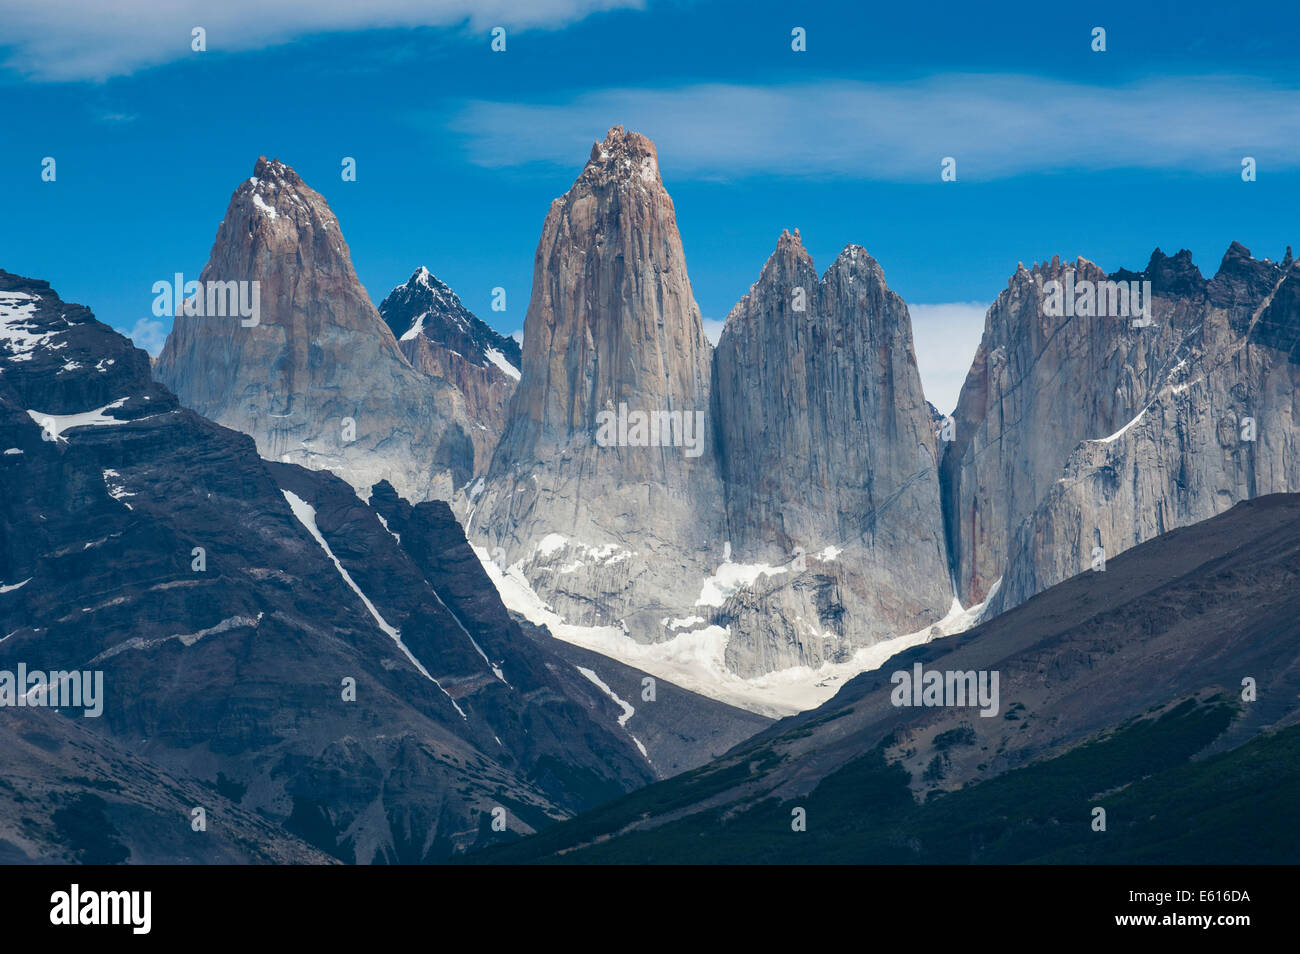 Les pics de Torres del Paine, Parc National Torres del Paine, Patagonie, Chili Banque D'Images